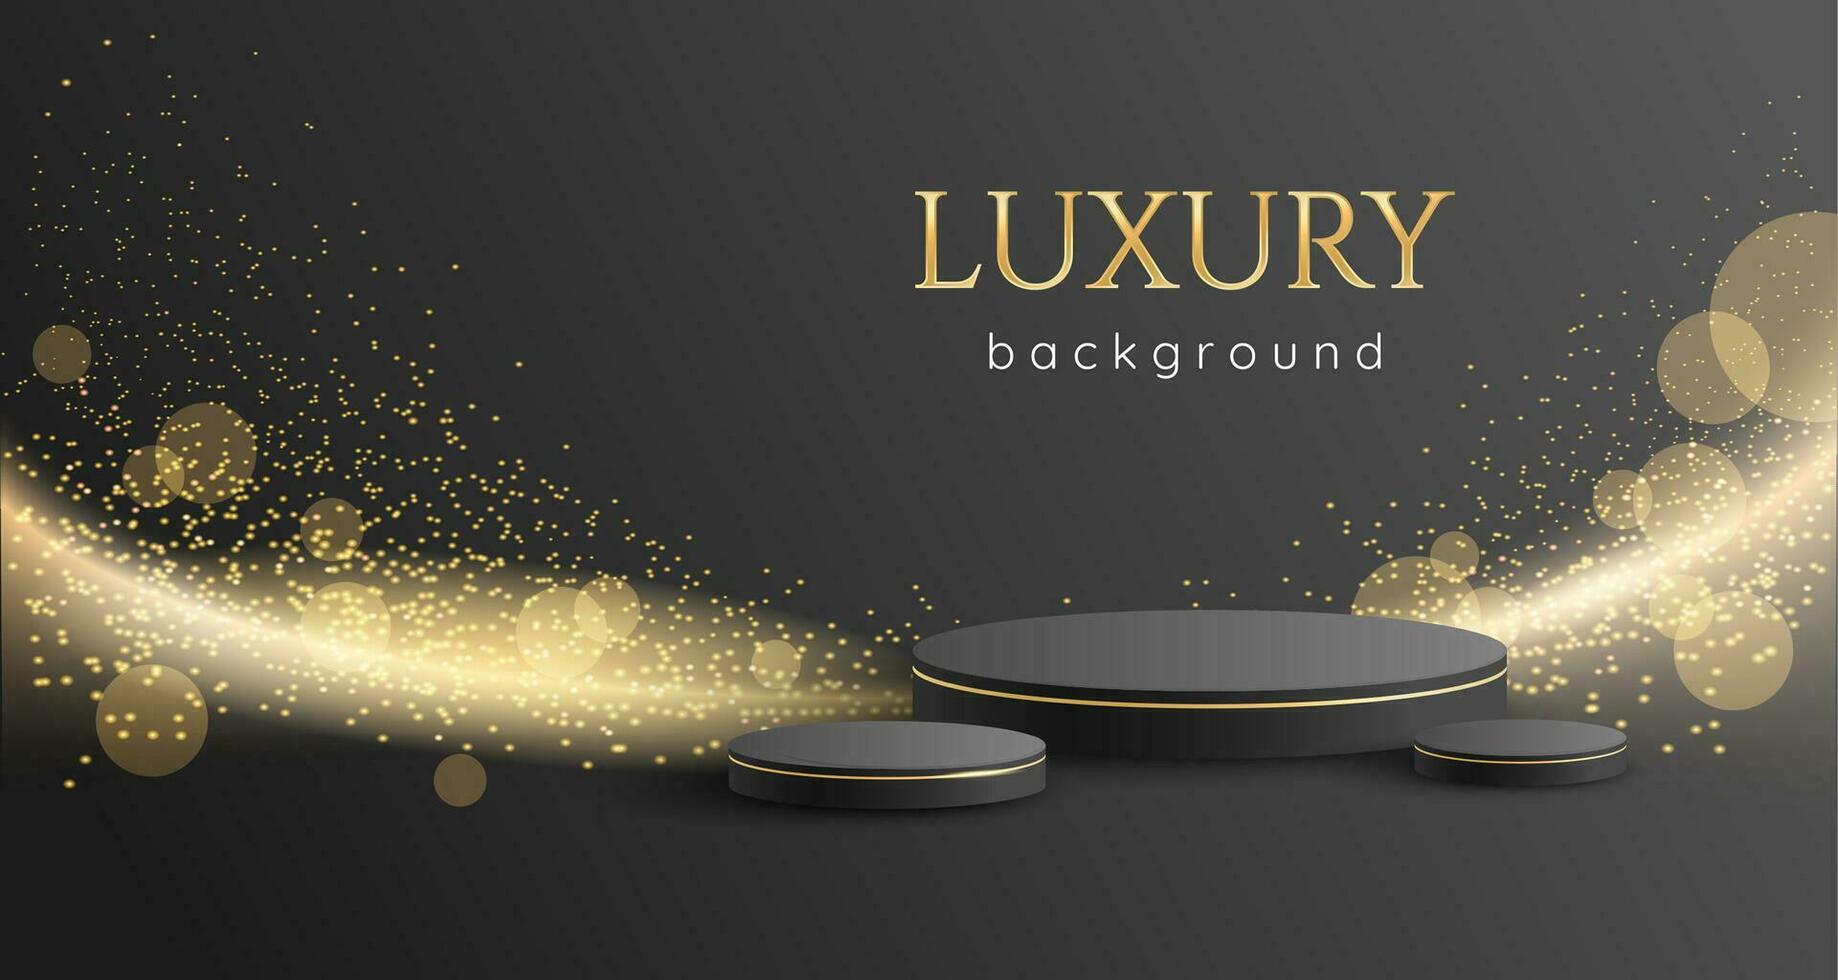 Luxus Vektor Hintergrund mit 3d Podium, golden glühen, funkelt und Sterne. Postkarte, Netz Banner, Gruß, einladend Prämie Hintergrund.